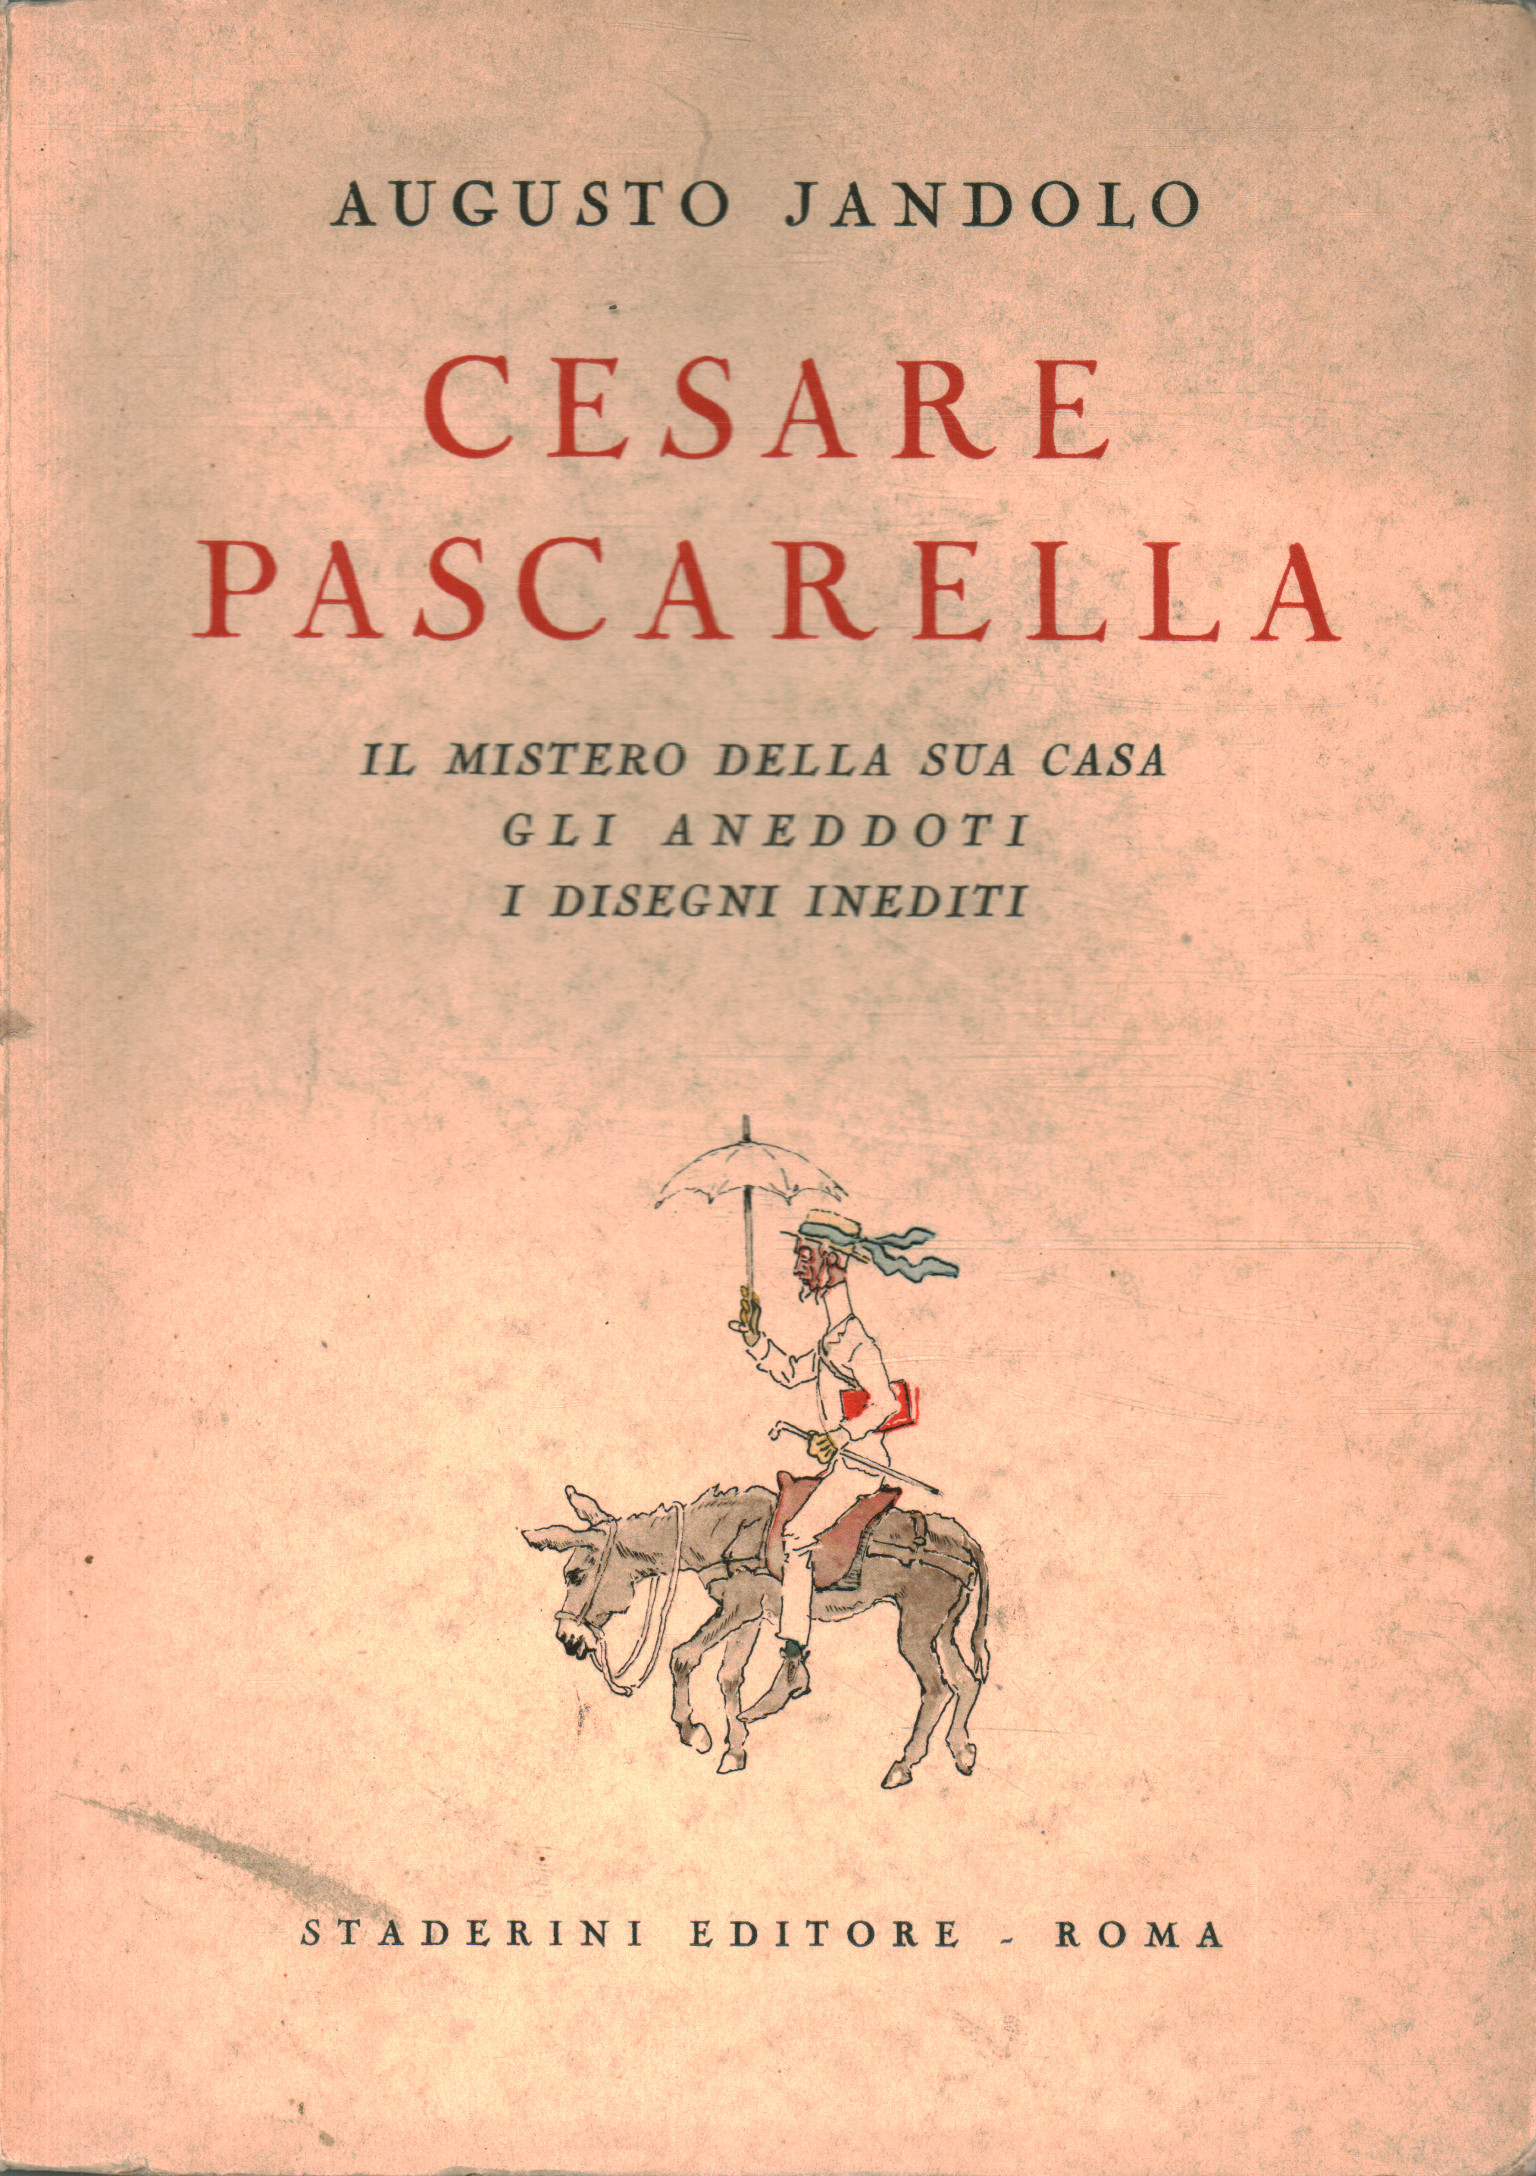 Cesare Pascarella, Augusto Jandolo